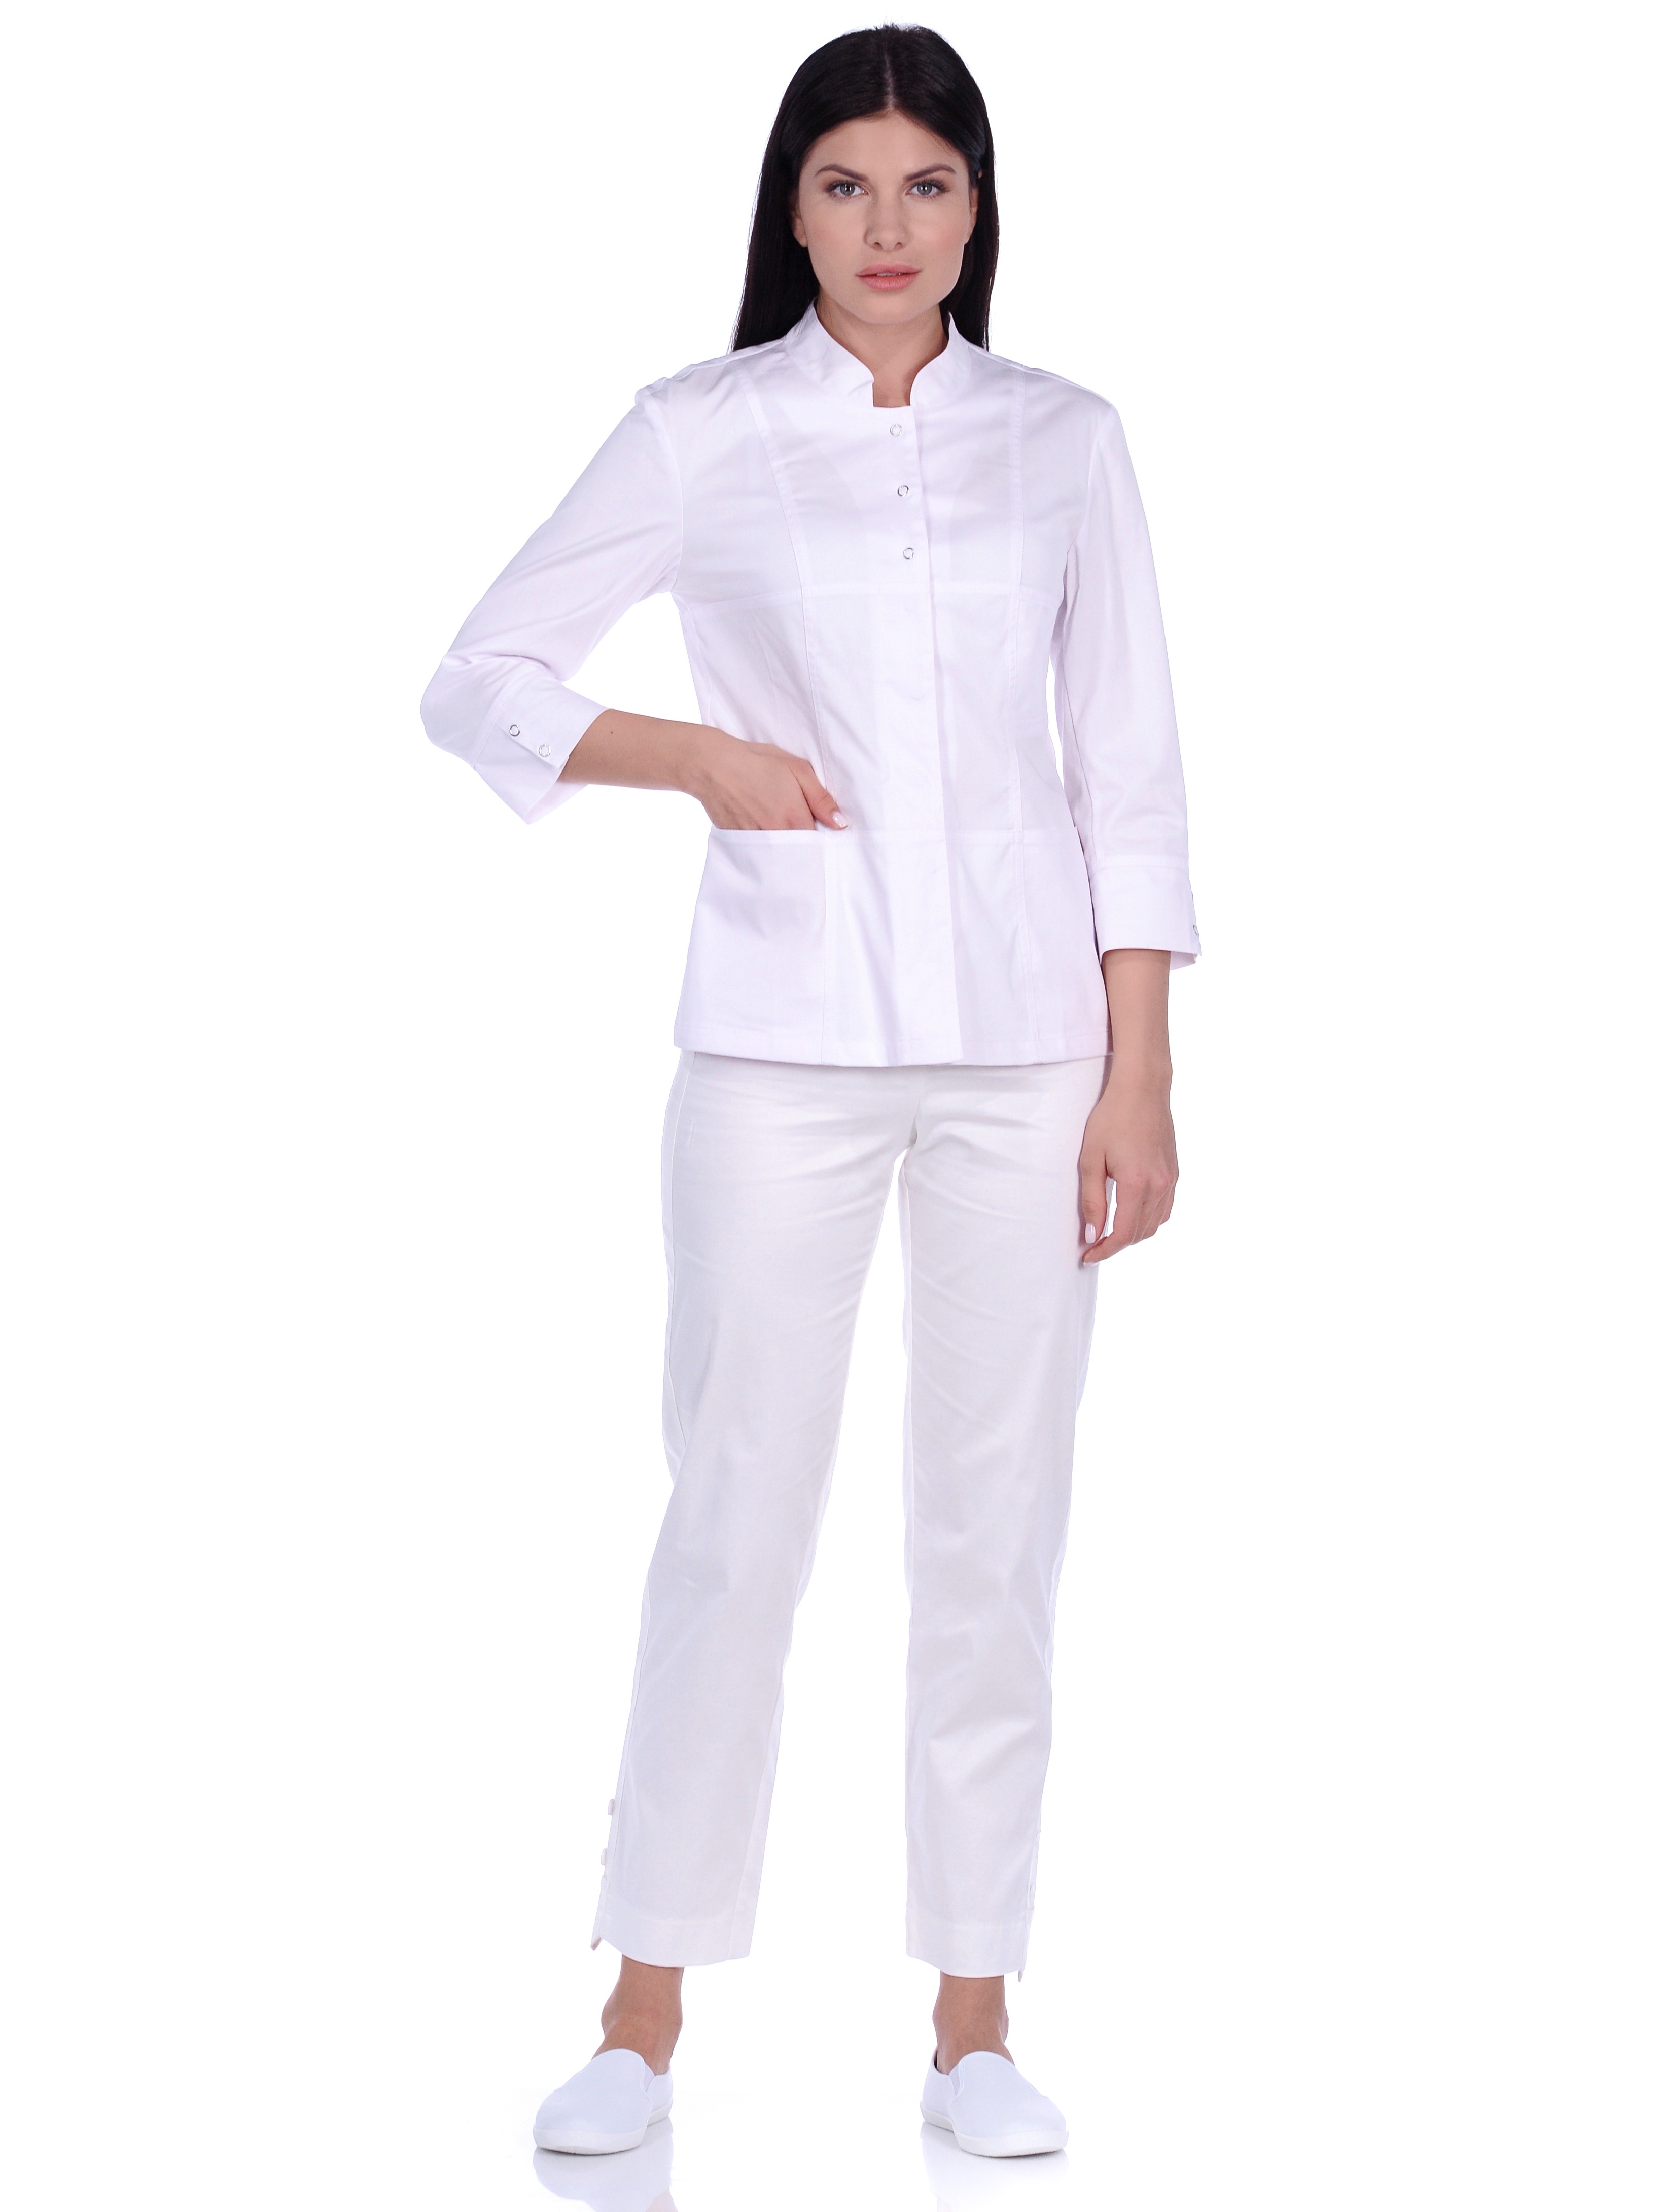 Рубашка медицинская женская Med Fashion Lab 03-735-09-023 белая 40-164